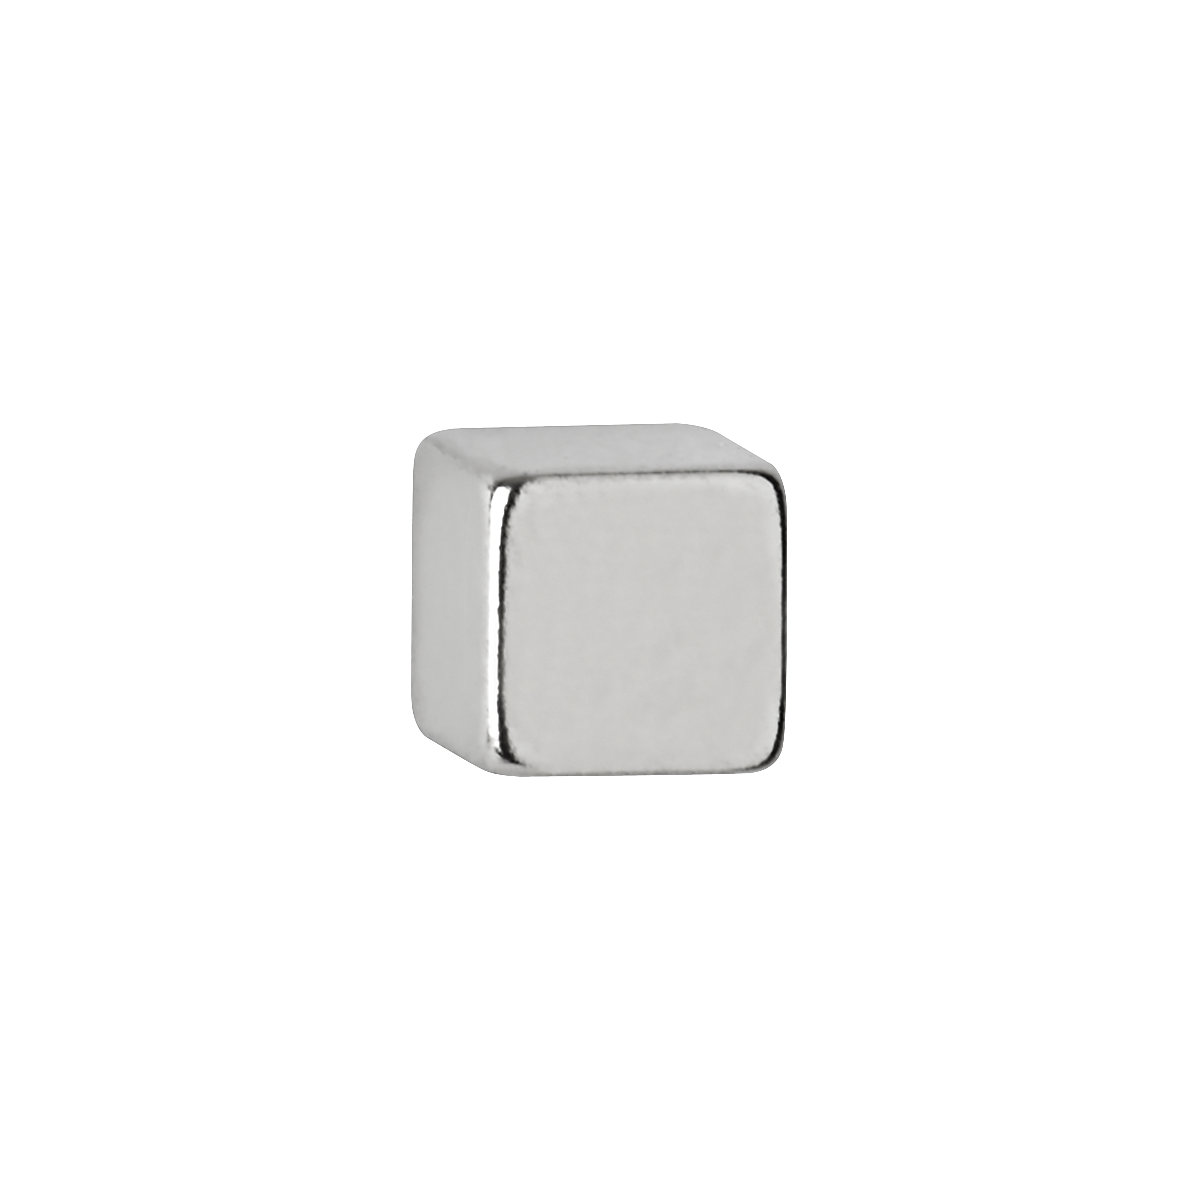 Neodymium cube magnet - MAUL